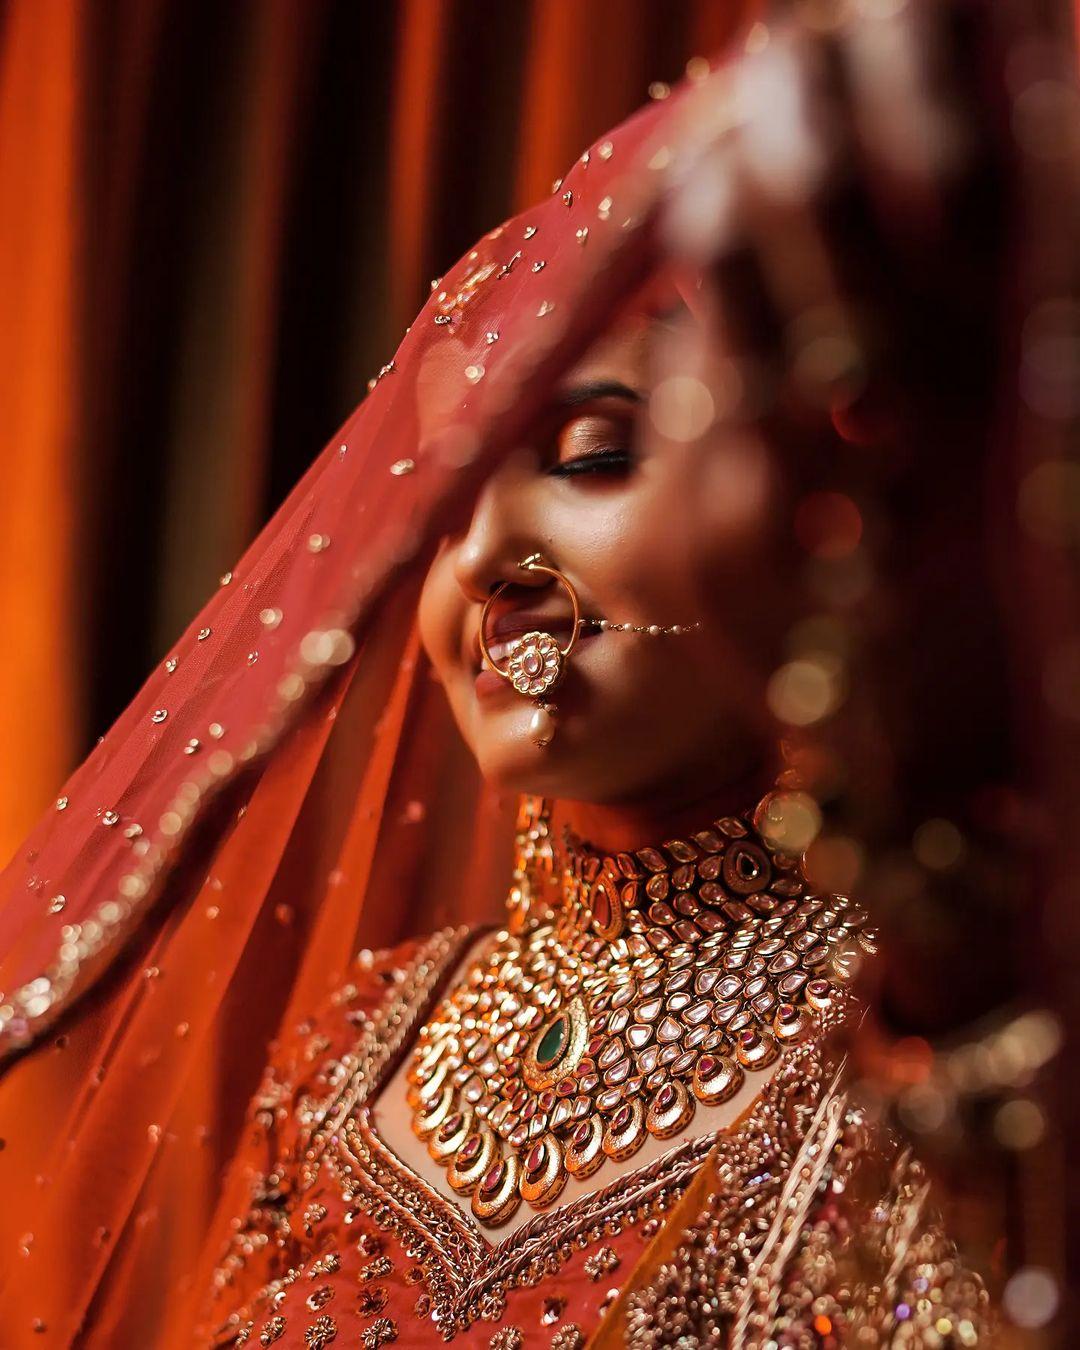 A Dreamy Wedding With The Bride In Unique Bridal Jewellery | Indian wedding  poses, Indian wedding couple photography, Indian bride photography poses